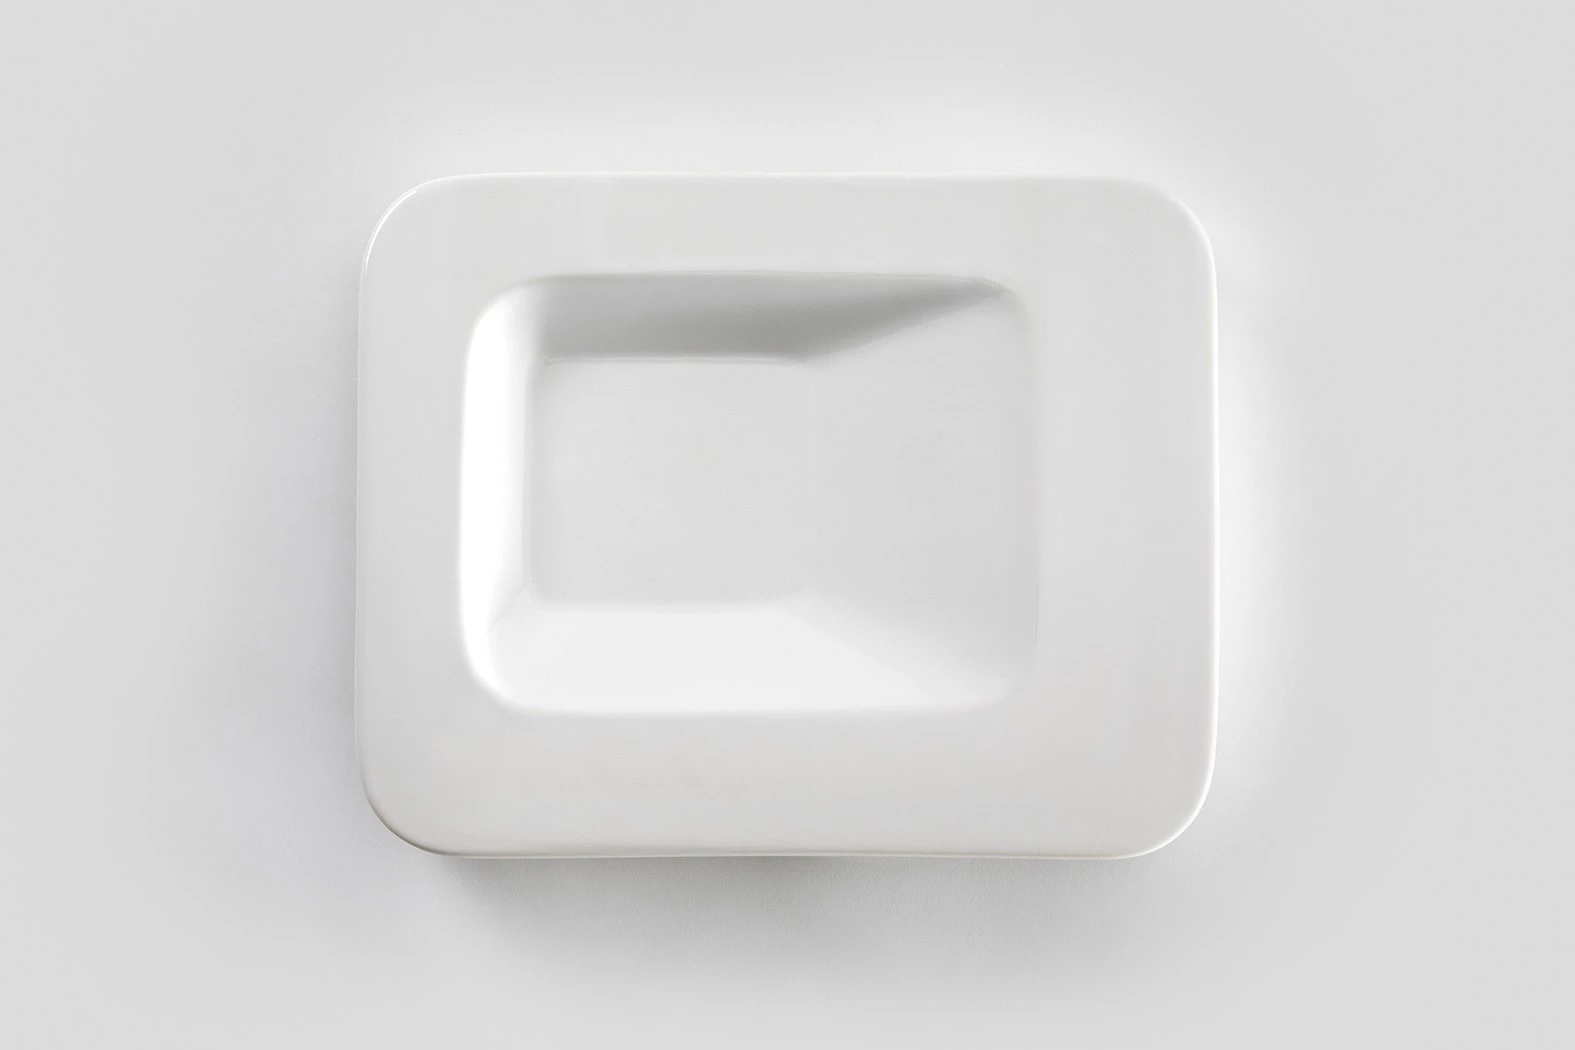 Small Square - Jasper Morrison - Object - Galerie kreo